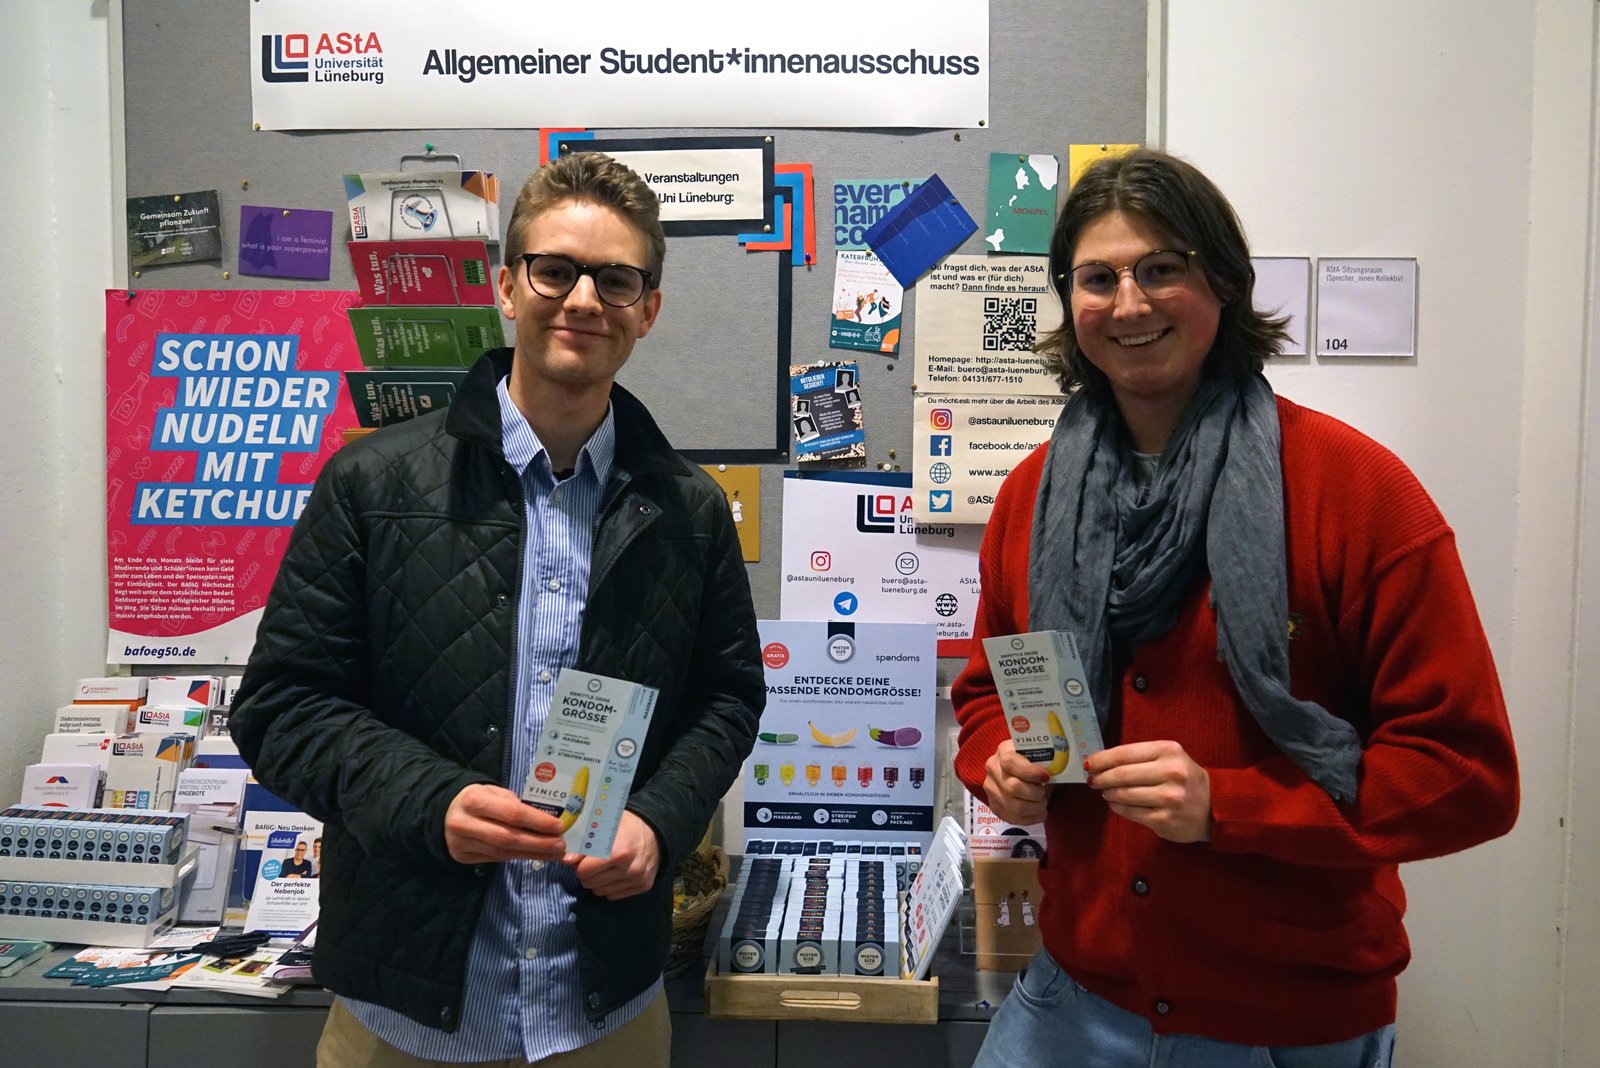 Luis ze společnosti Spondoms (vlevo) spolu s Maxem z AStA Leuphanské univerzity v Lüneburgu (vpravo) otevírají automat na kondomy zdarma.